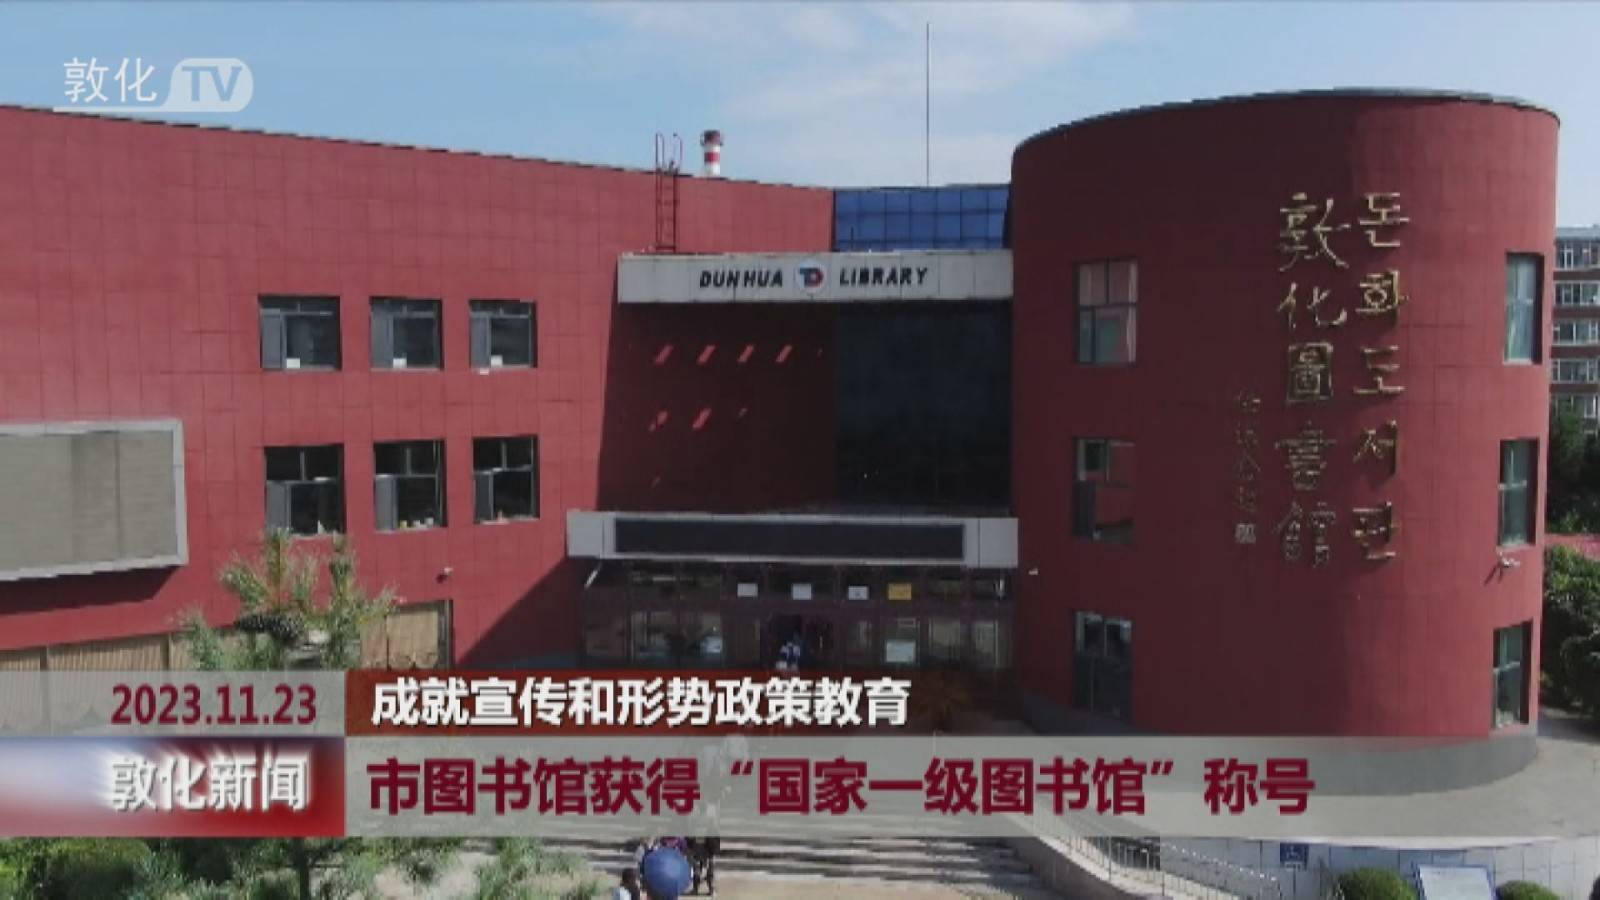 敦化市图书馆获得“国家一级图书馆”称号